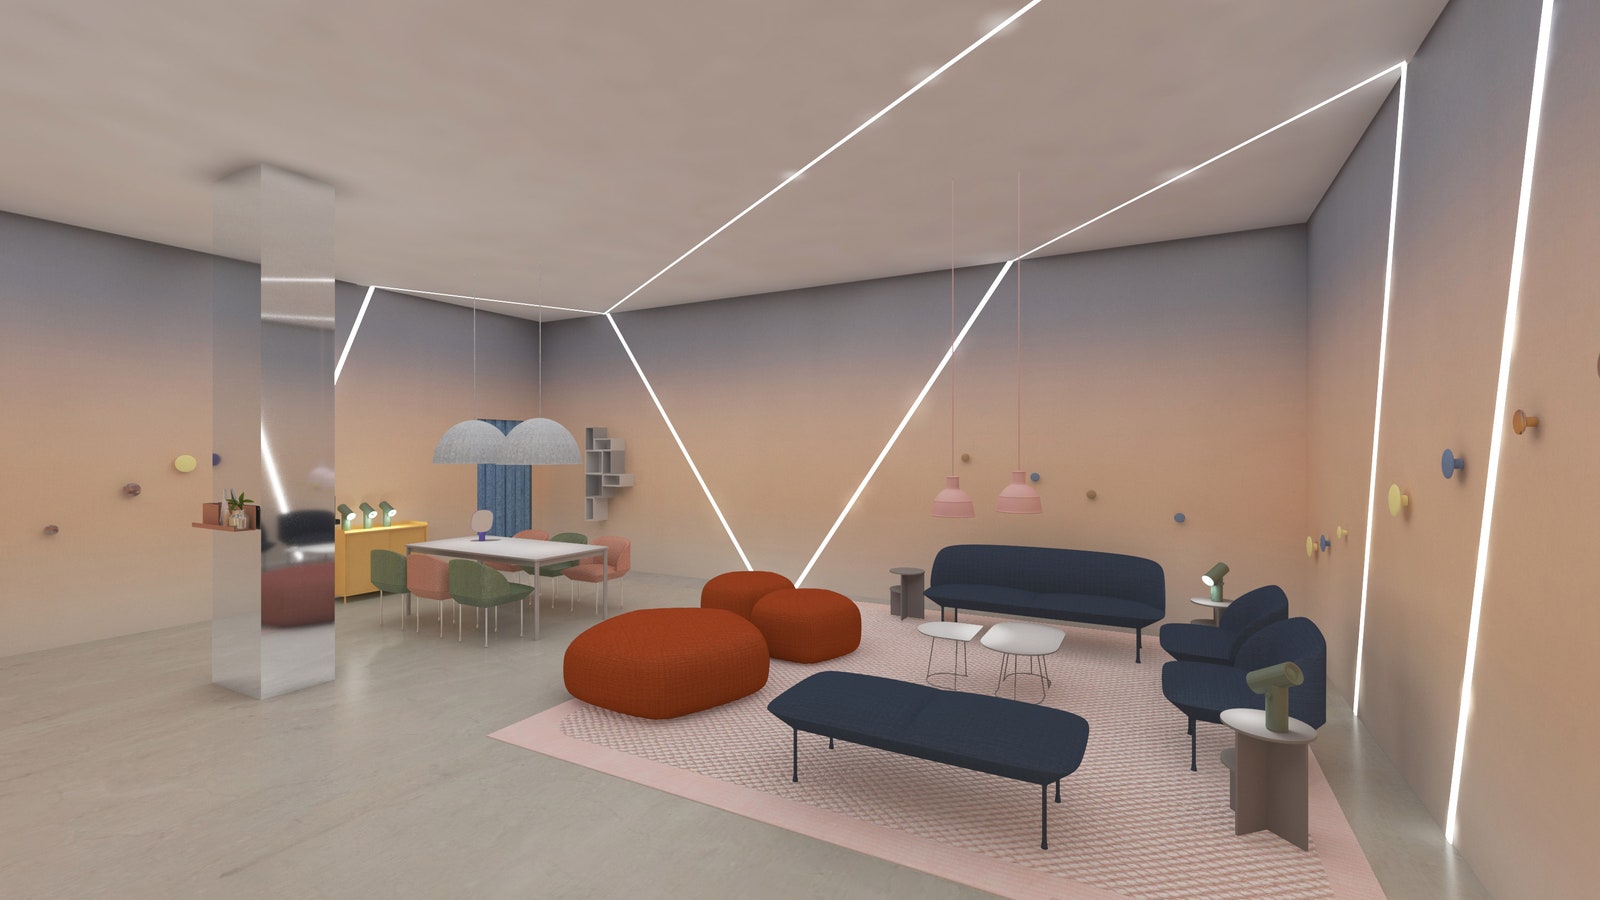 Наука и дизайн инсталляция Google Design Studio на Миланской неделе дизайна